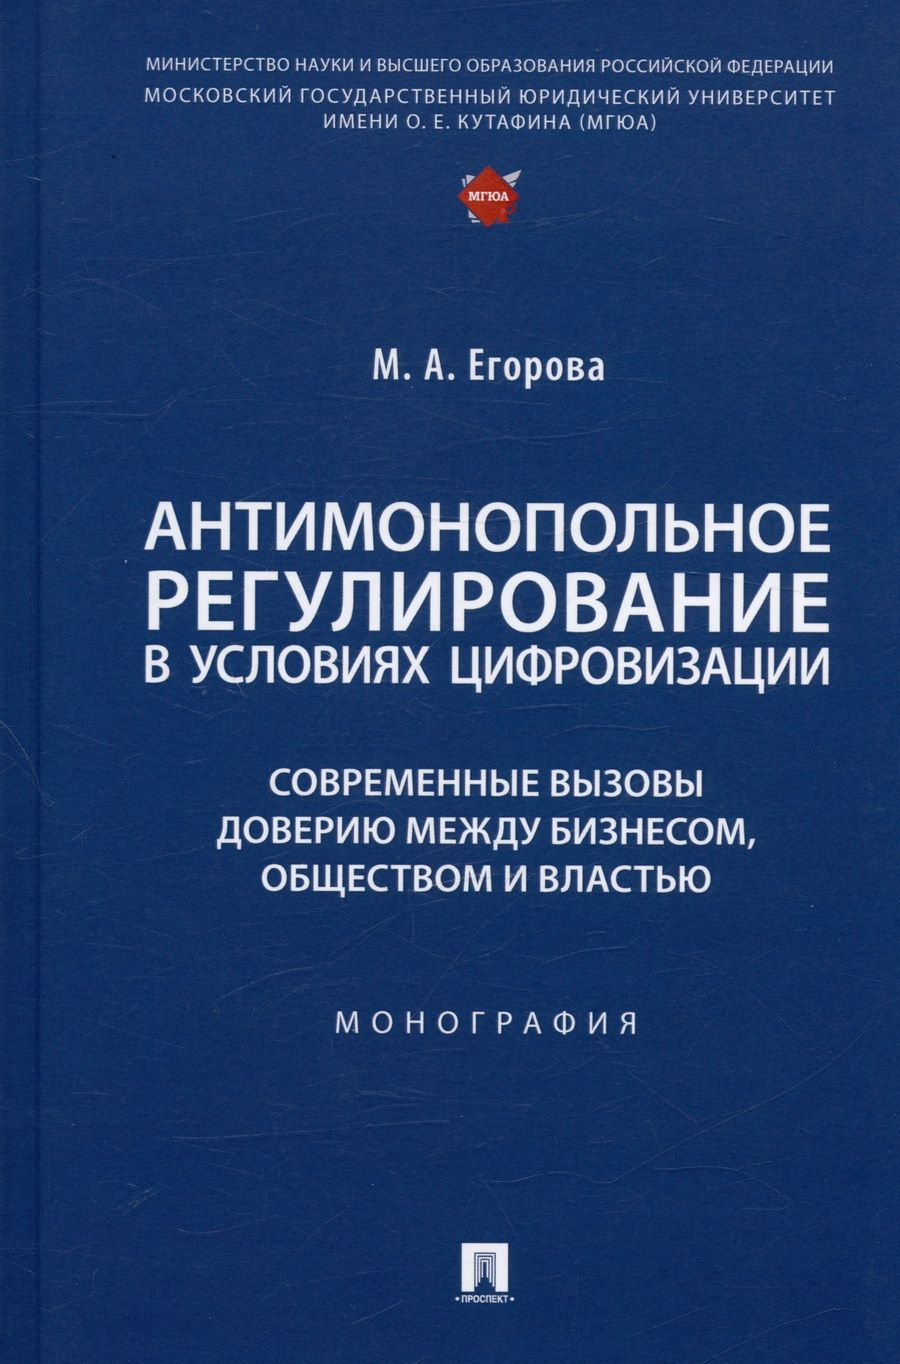 Обложка книги "Егорова: Антимонопольное регулирование в условиях цифровизации. Монография"